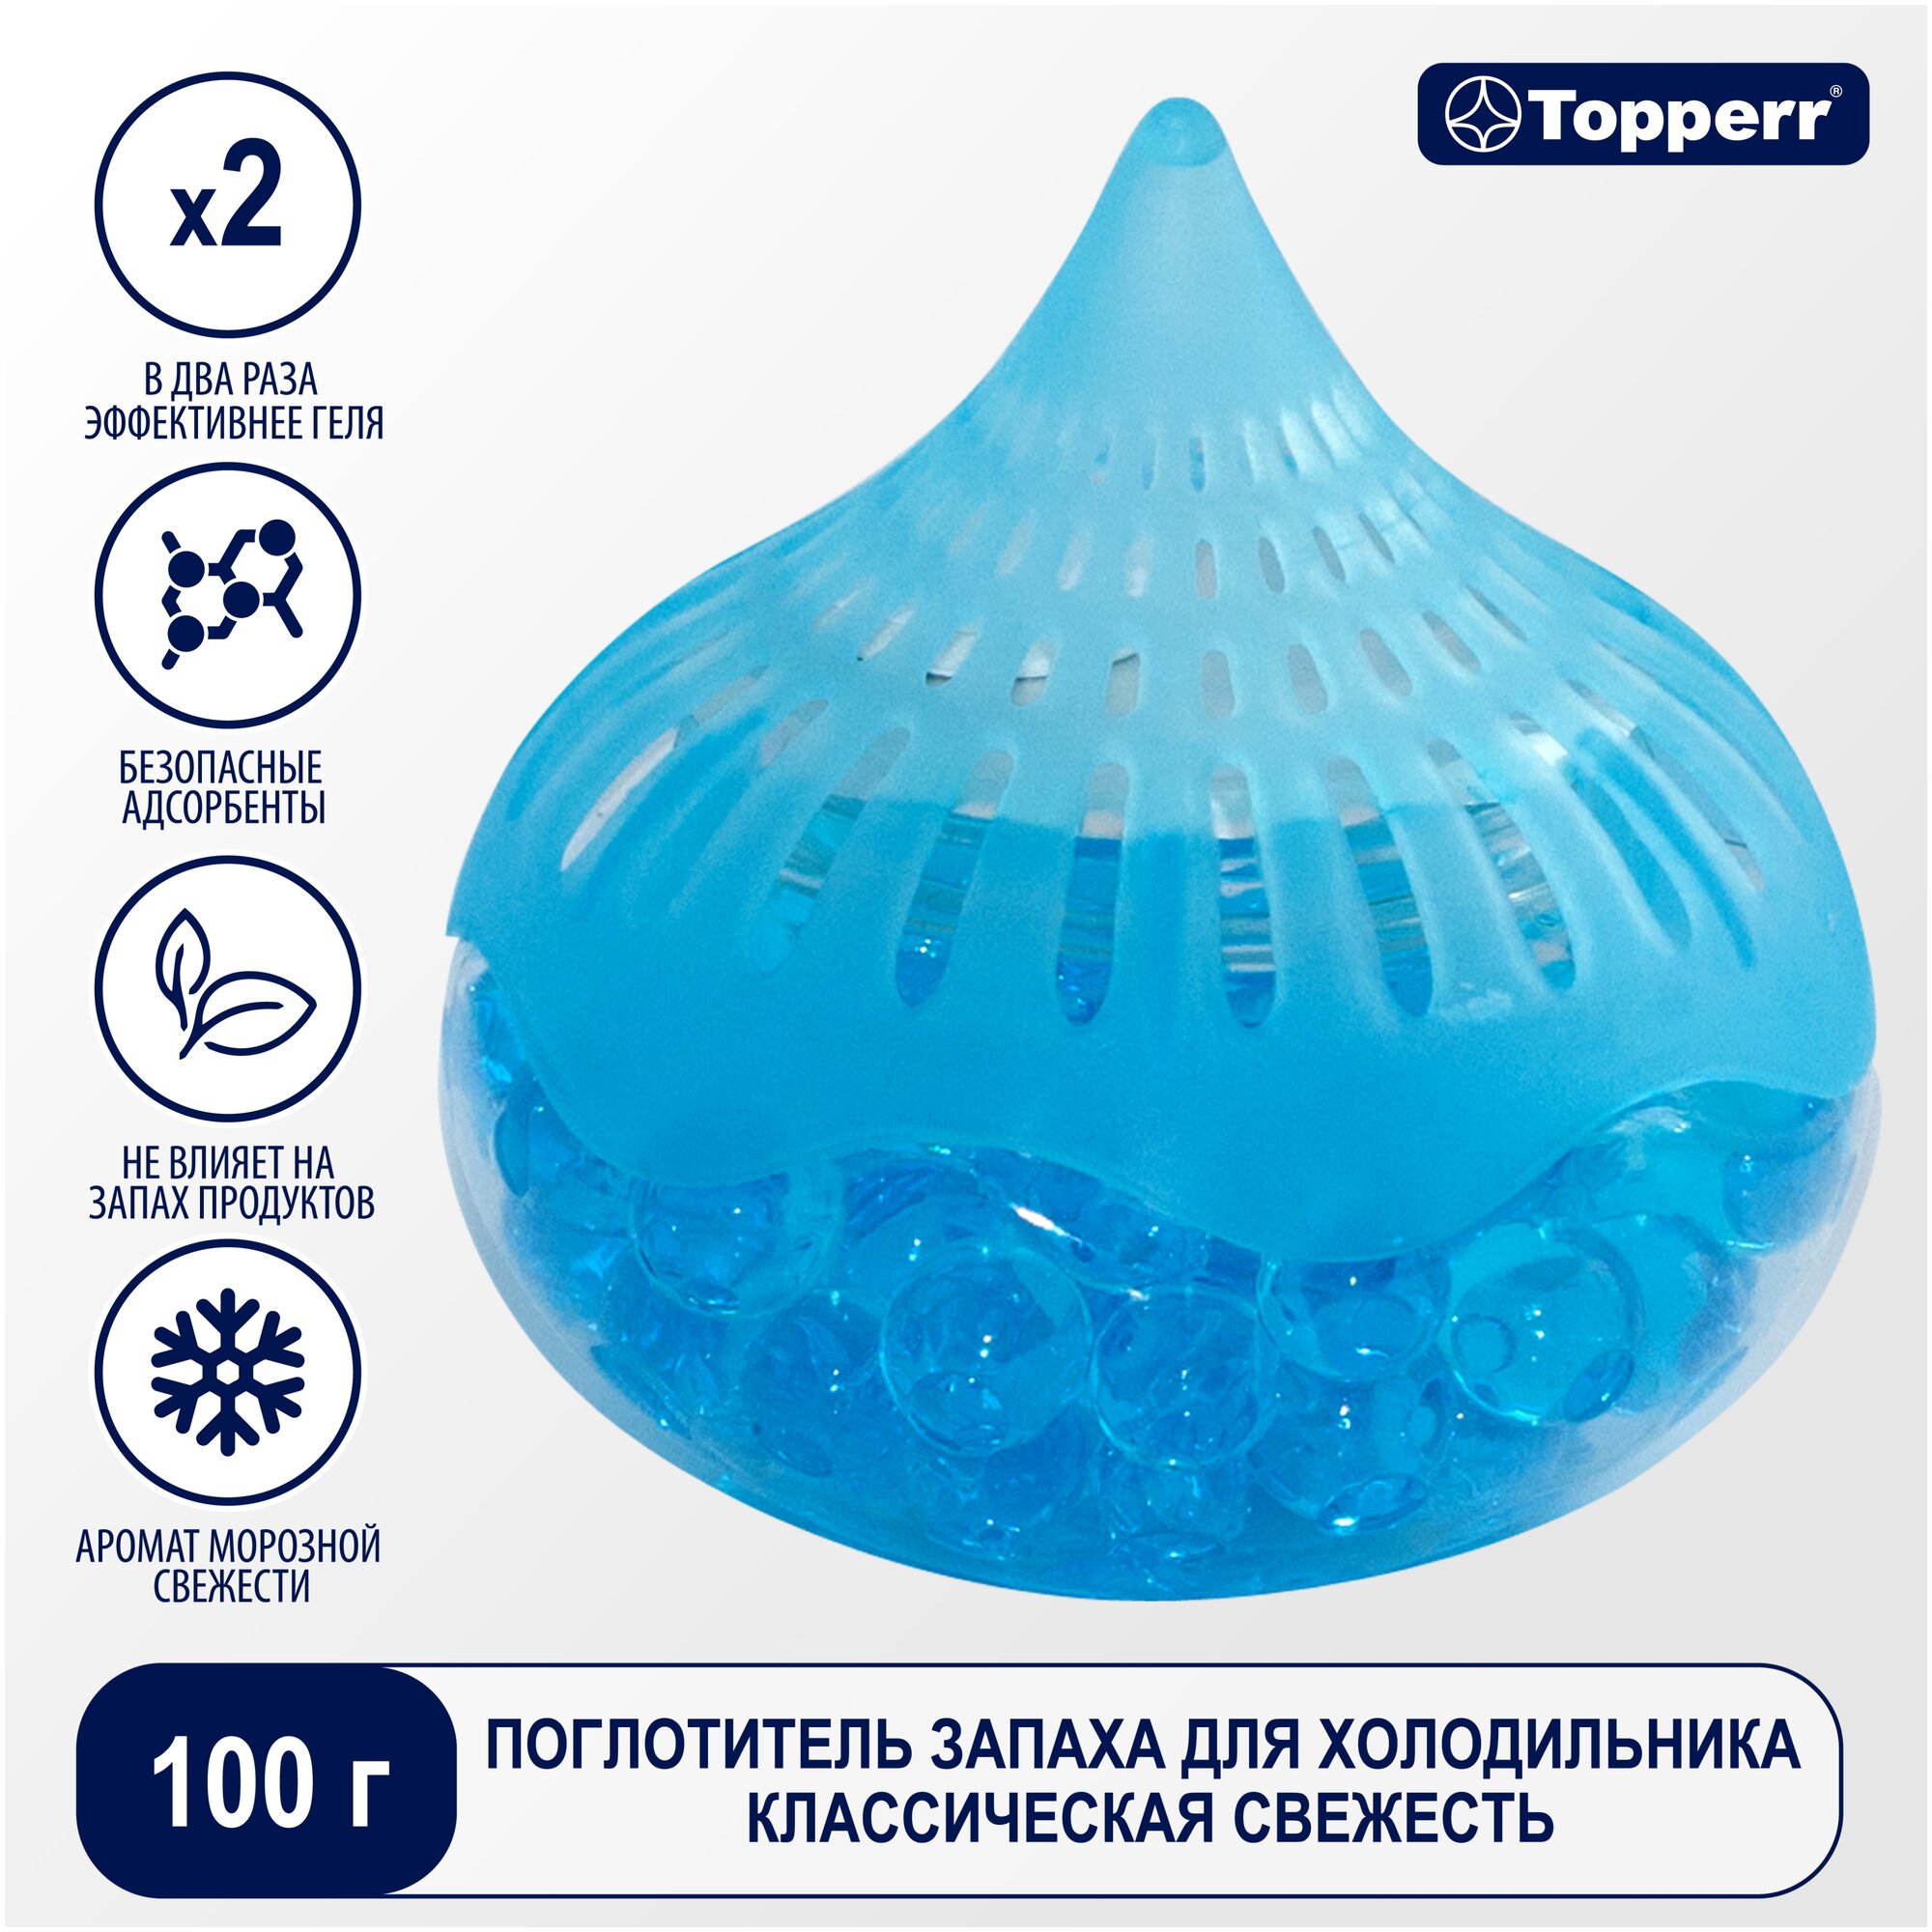 Поглотитель запаха для холодильника Topperr 3109 голубой ЛЕД гелевый